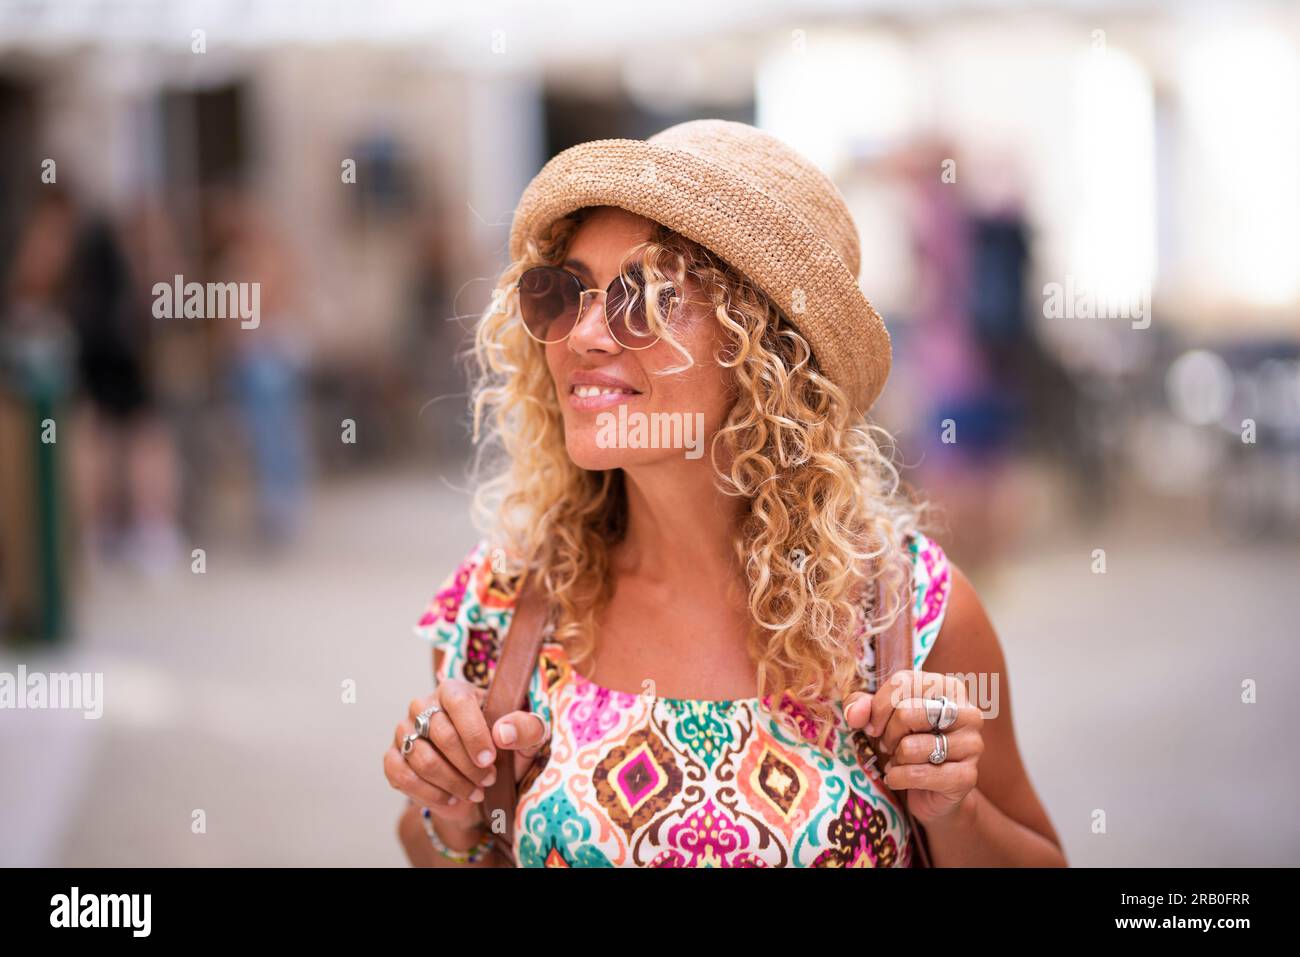 Glückliche Touristin mit blonden langen lockigen Haaren und Hut, die sich umsieht und alleine mit dem Rucksack läuft, Freizeitaktivitäten und Urlaubszeit genießt. Menschen im Hintergrund unscharf gemacht. Stockfoto